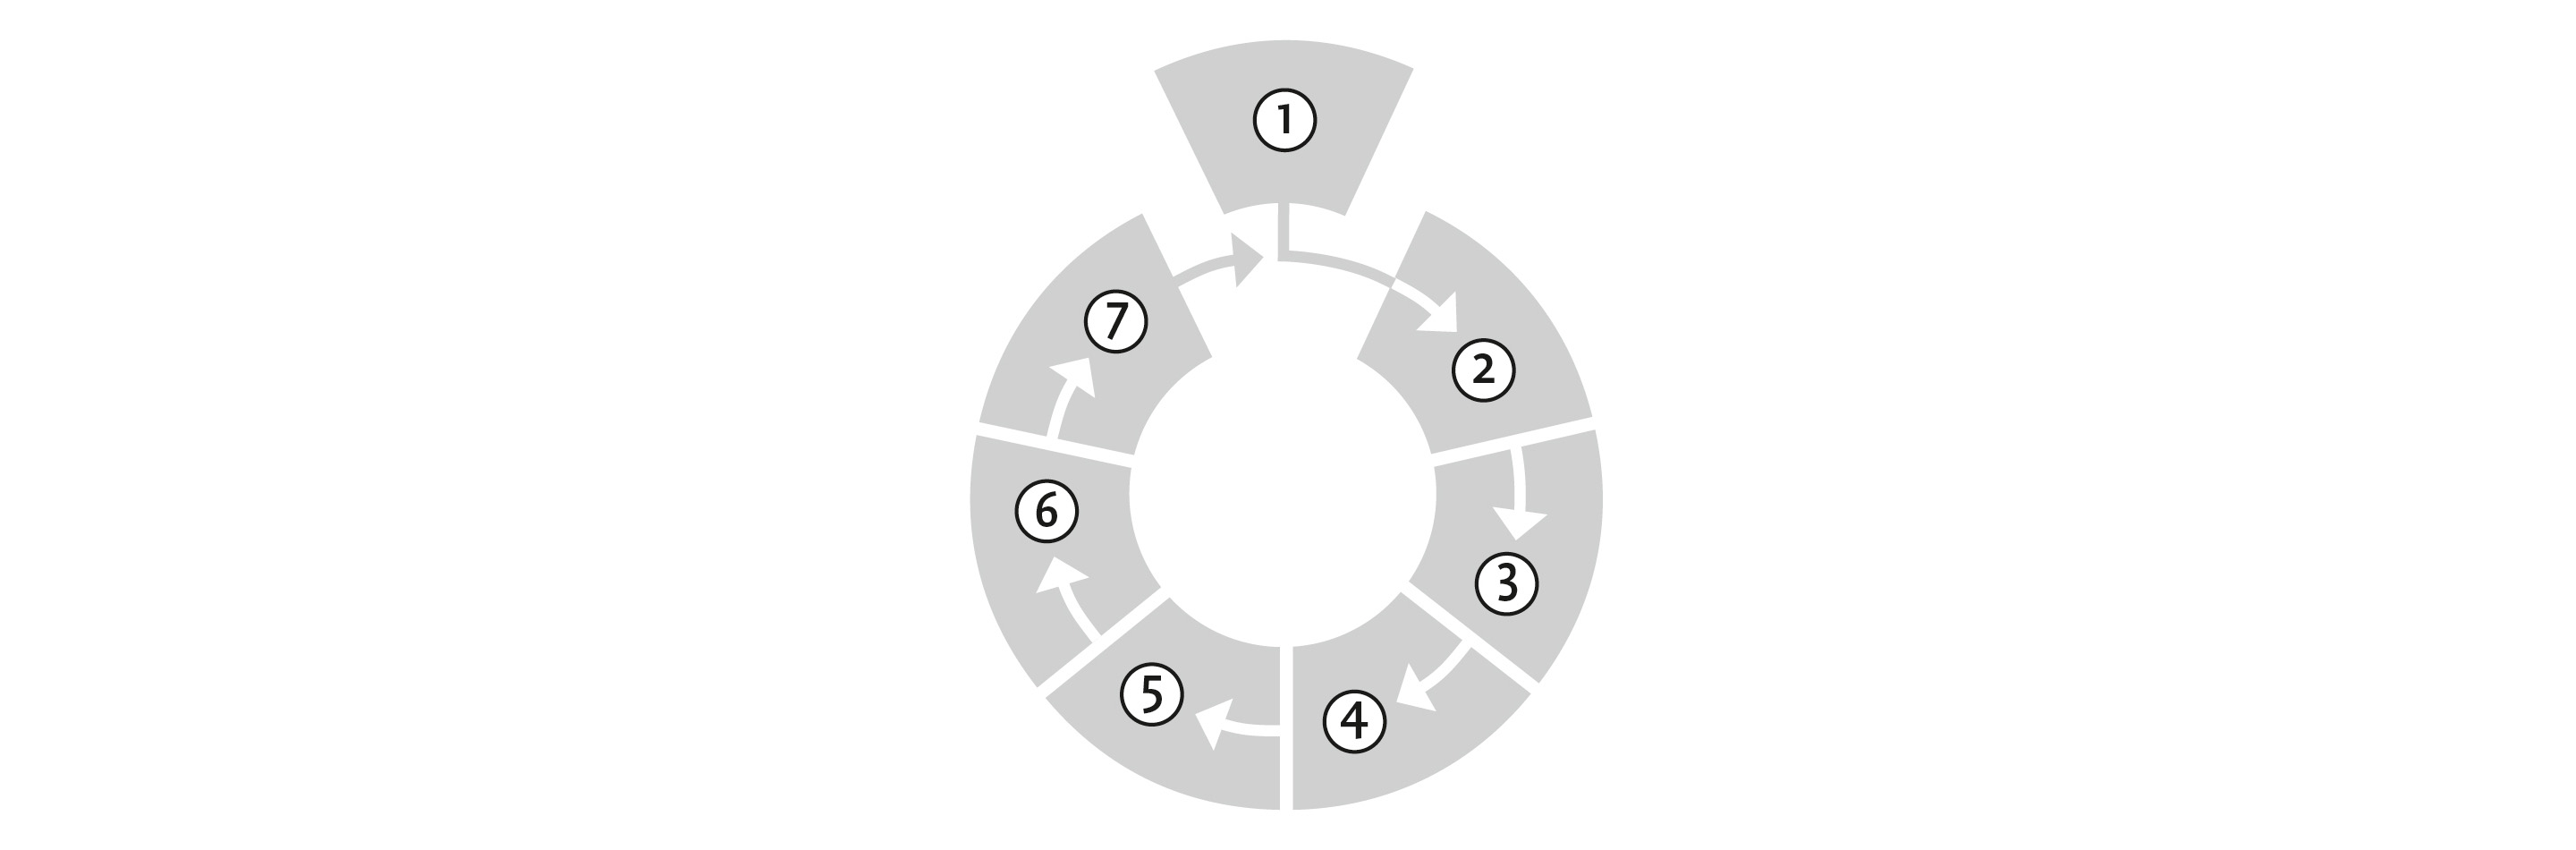 Illusttration: Kreisdiagramm mit den Nummern 1-7